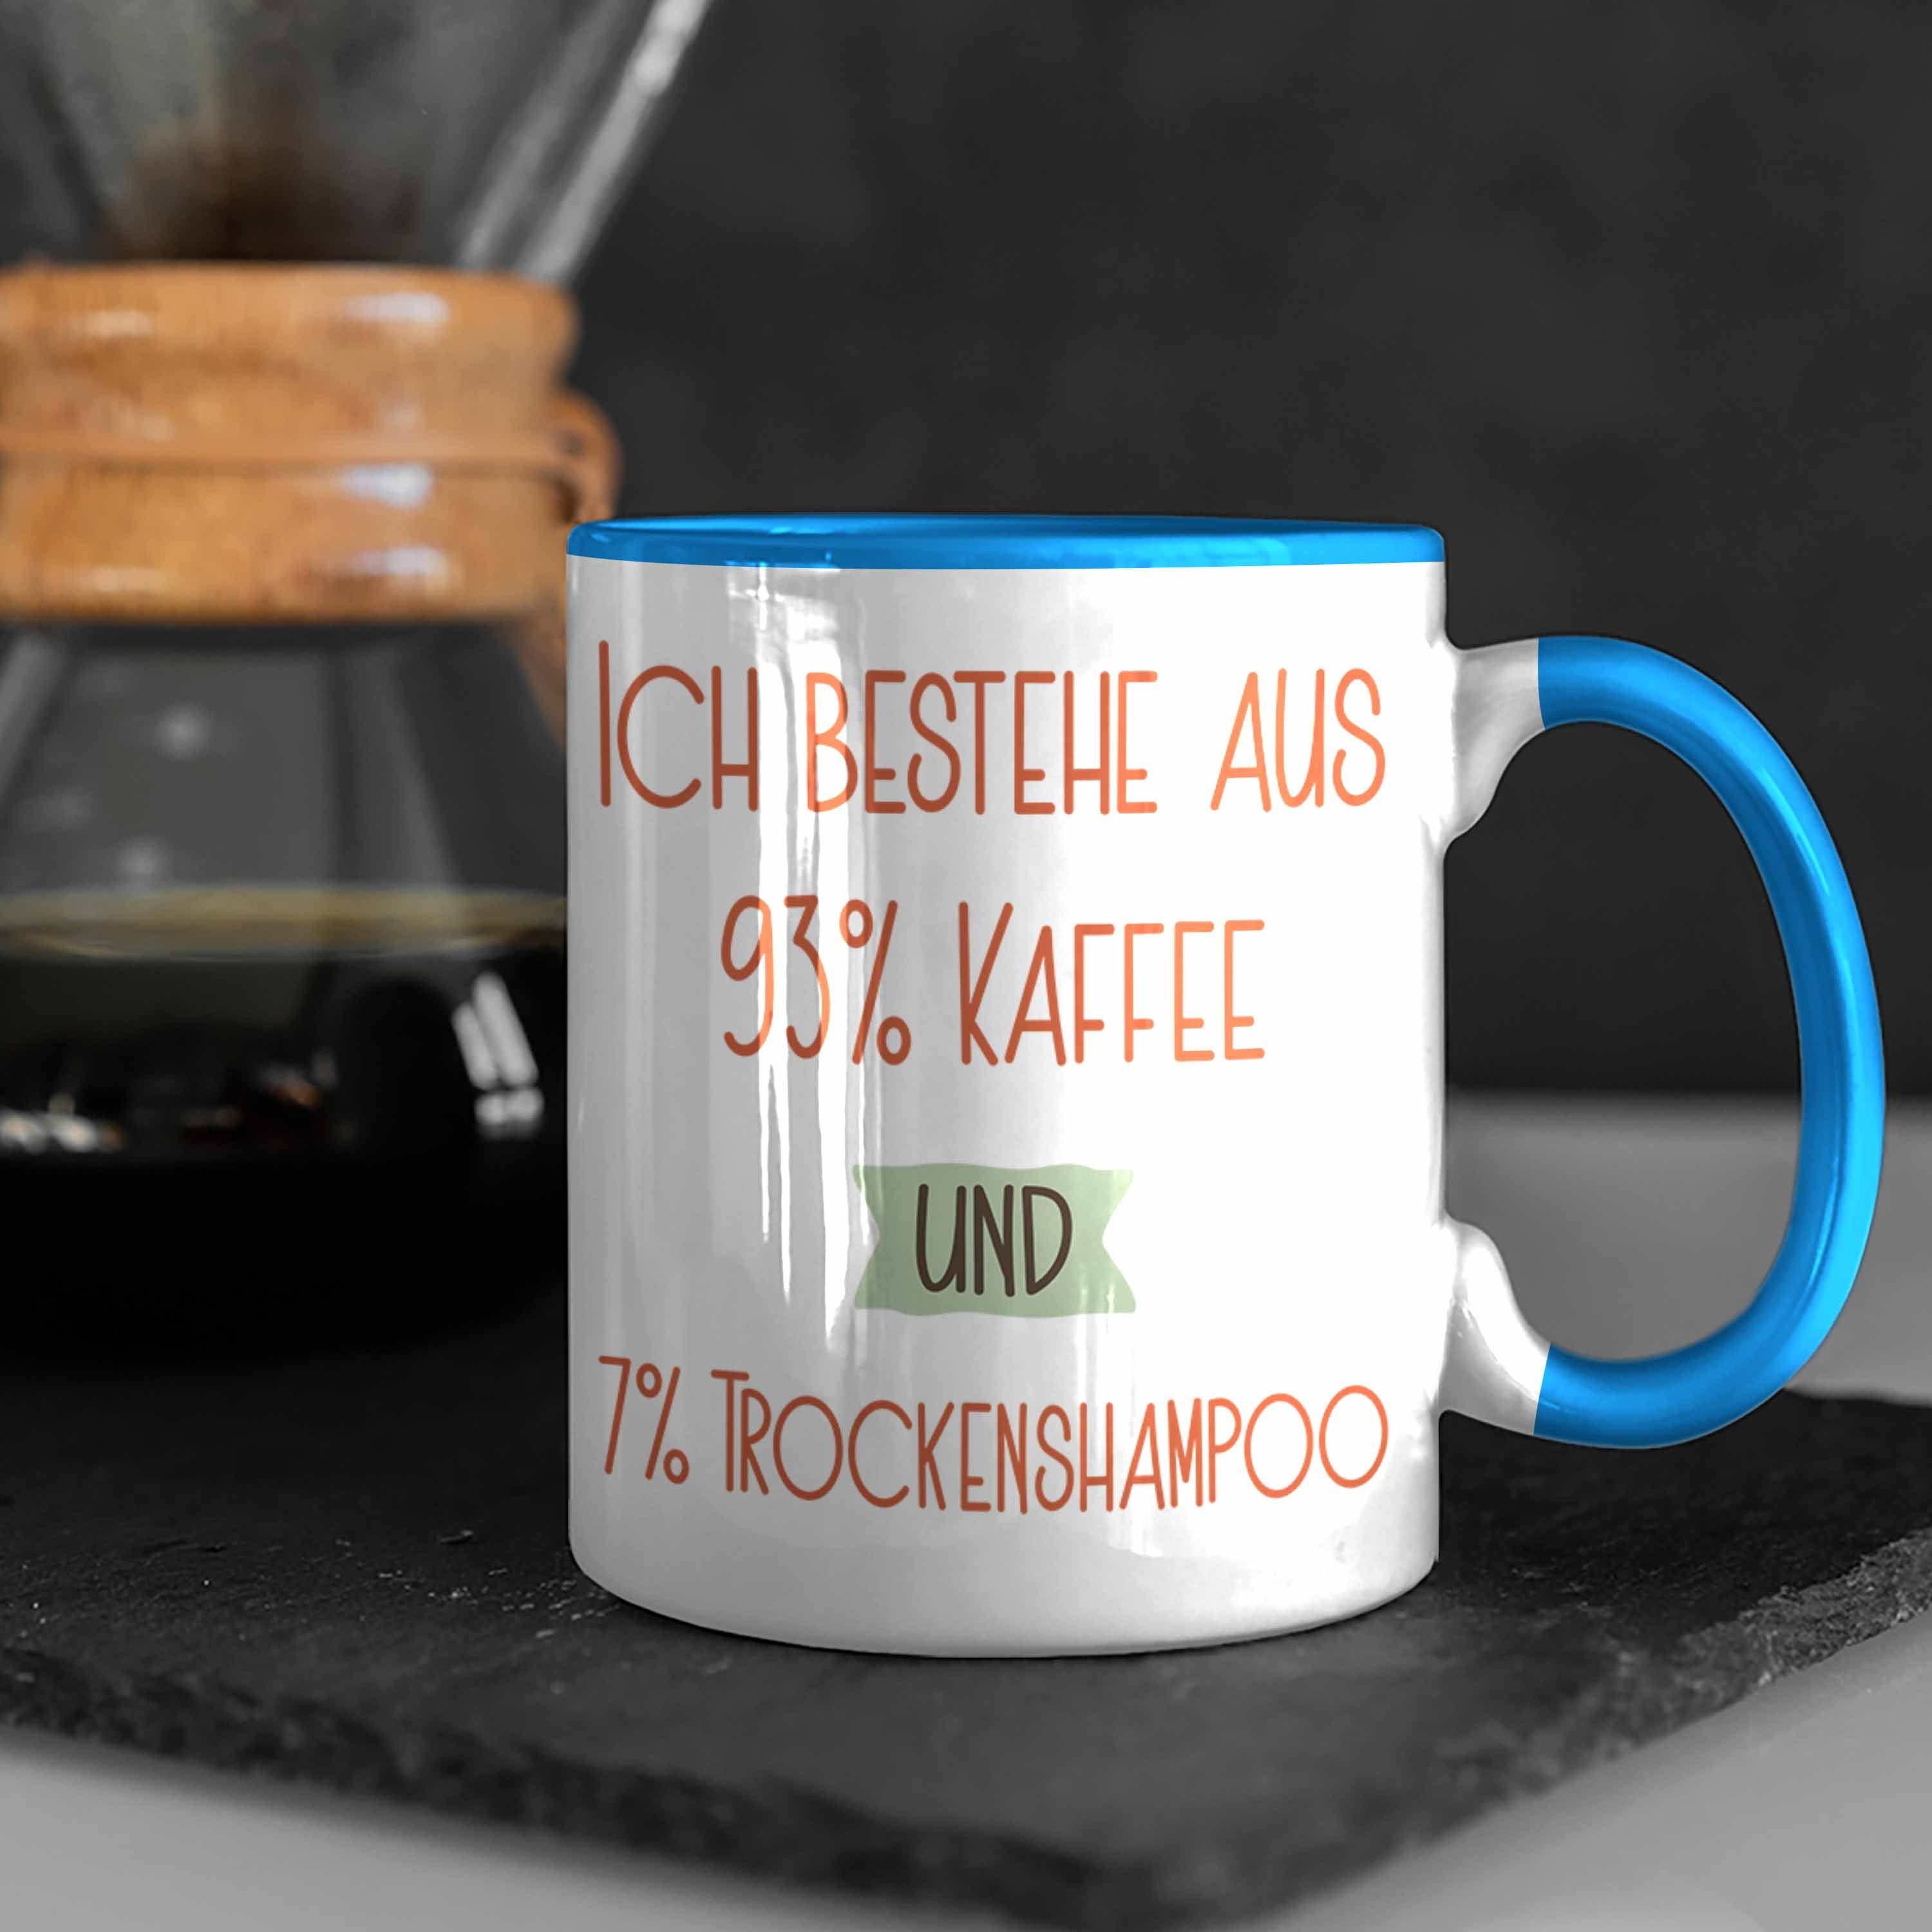 Trendation Tasse Für Kaffee Spruch und Lustiger Geschenk Tasse 7% 93% Blau Trockenshampoo Ko